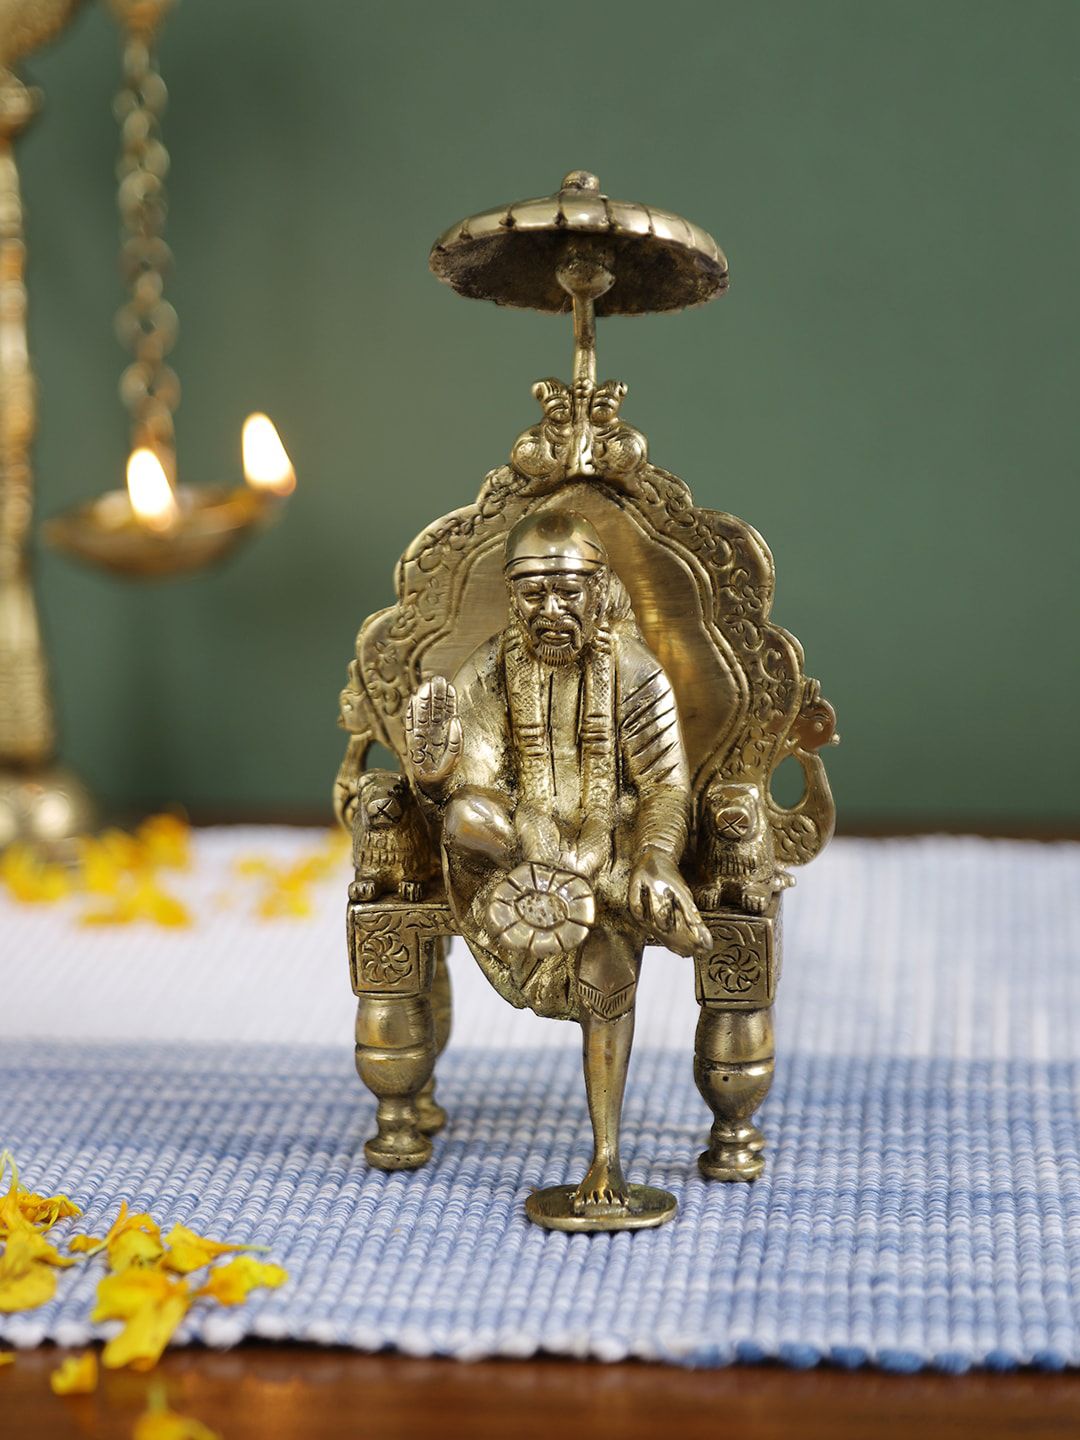 Imli Street Gold-Toned Brass Sai Baba Idol Price in India